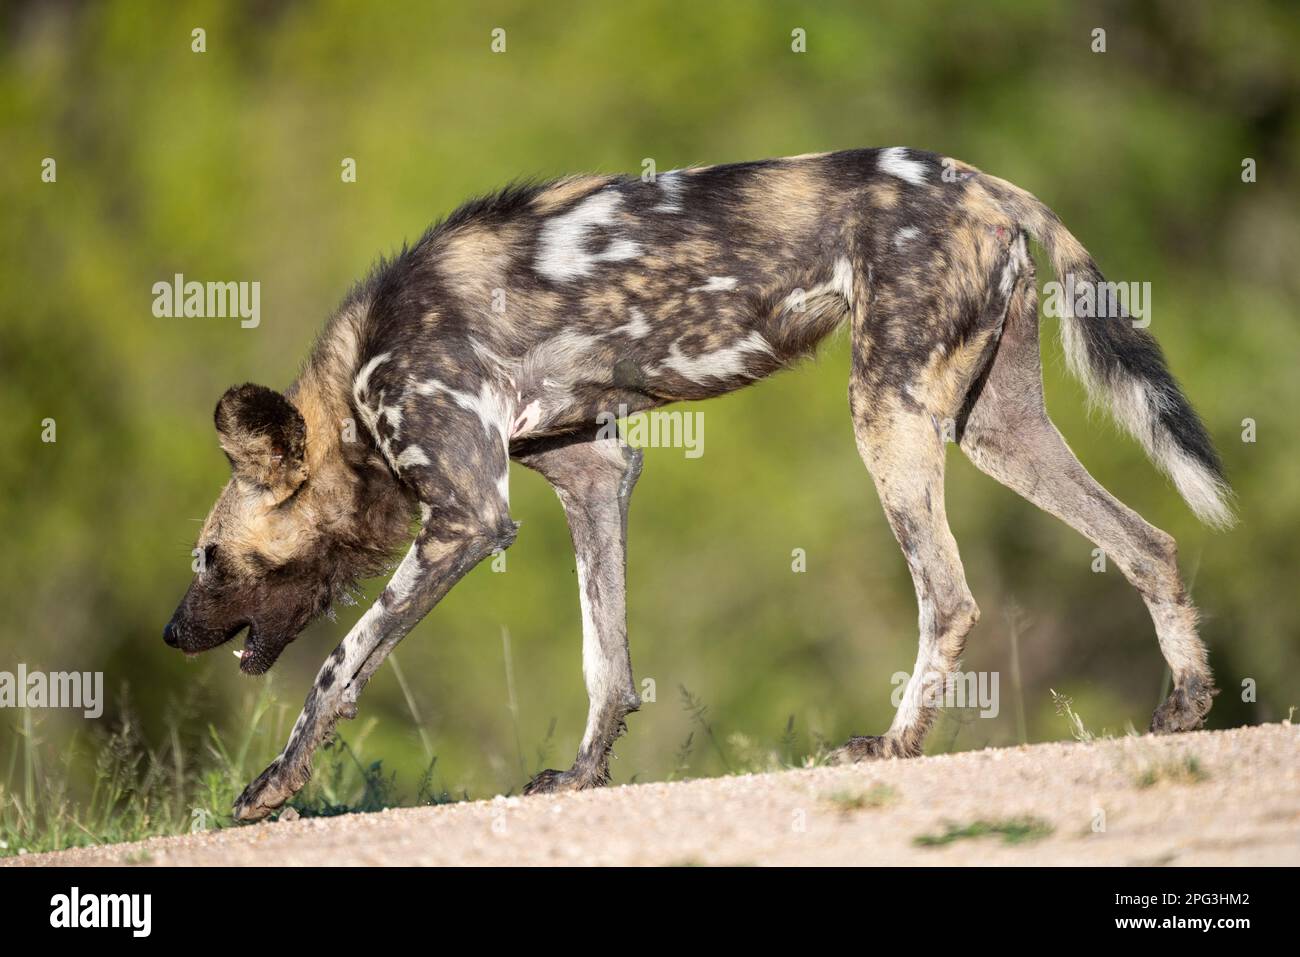 Vista laterale di un cane selvaggio africano che si aggredisce in una chiamata di contatto Foto Stock